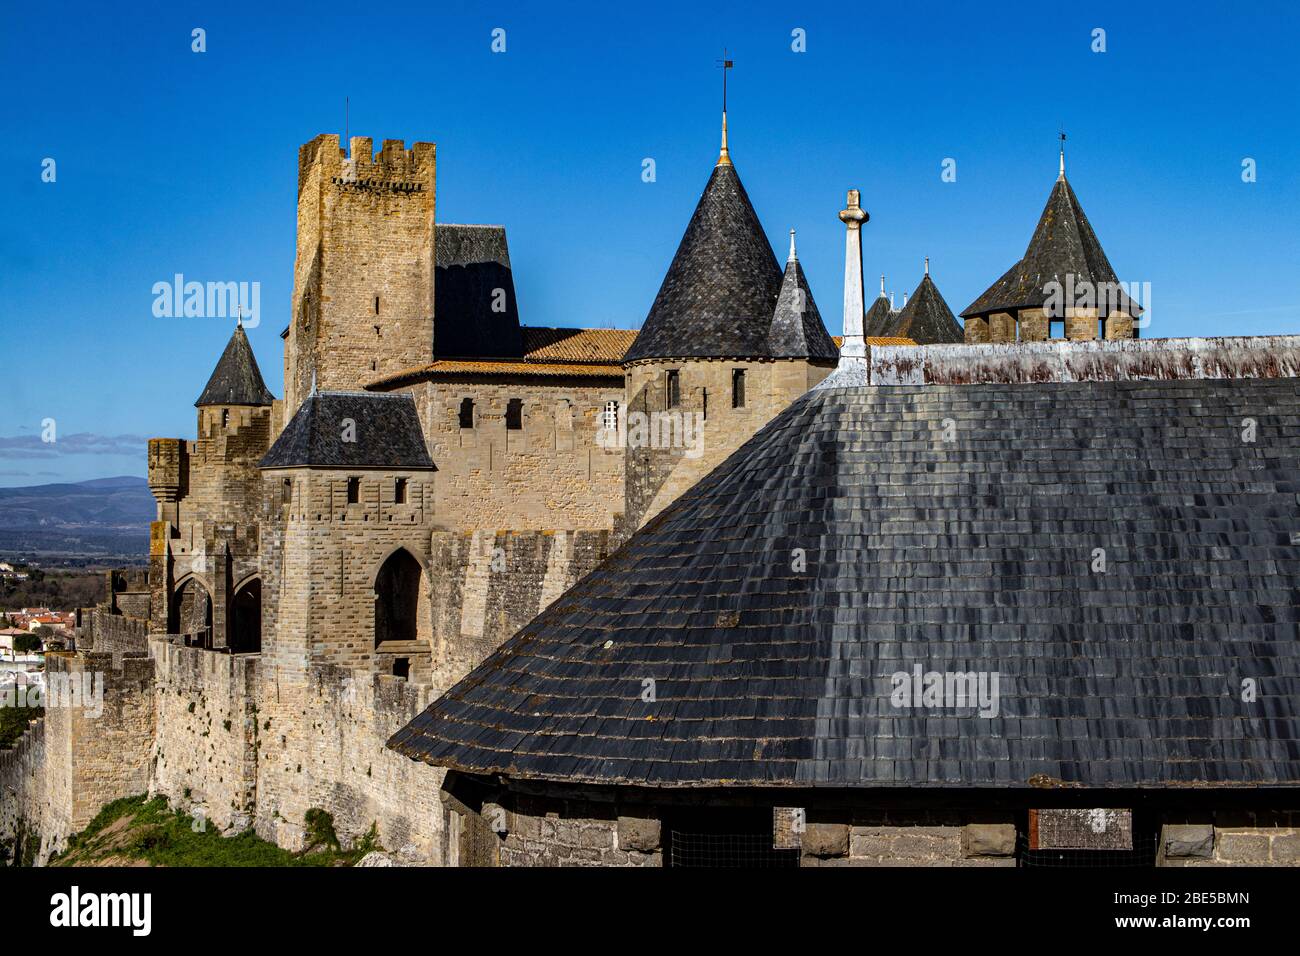 Carcassonne turrets, Cite de Carcassonne, Haute Garonne, France Stock Photo